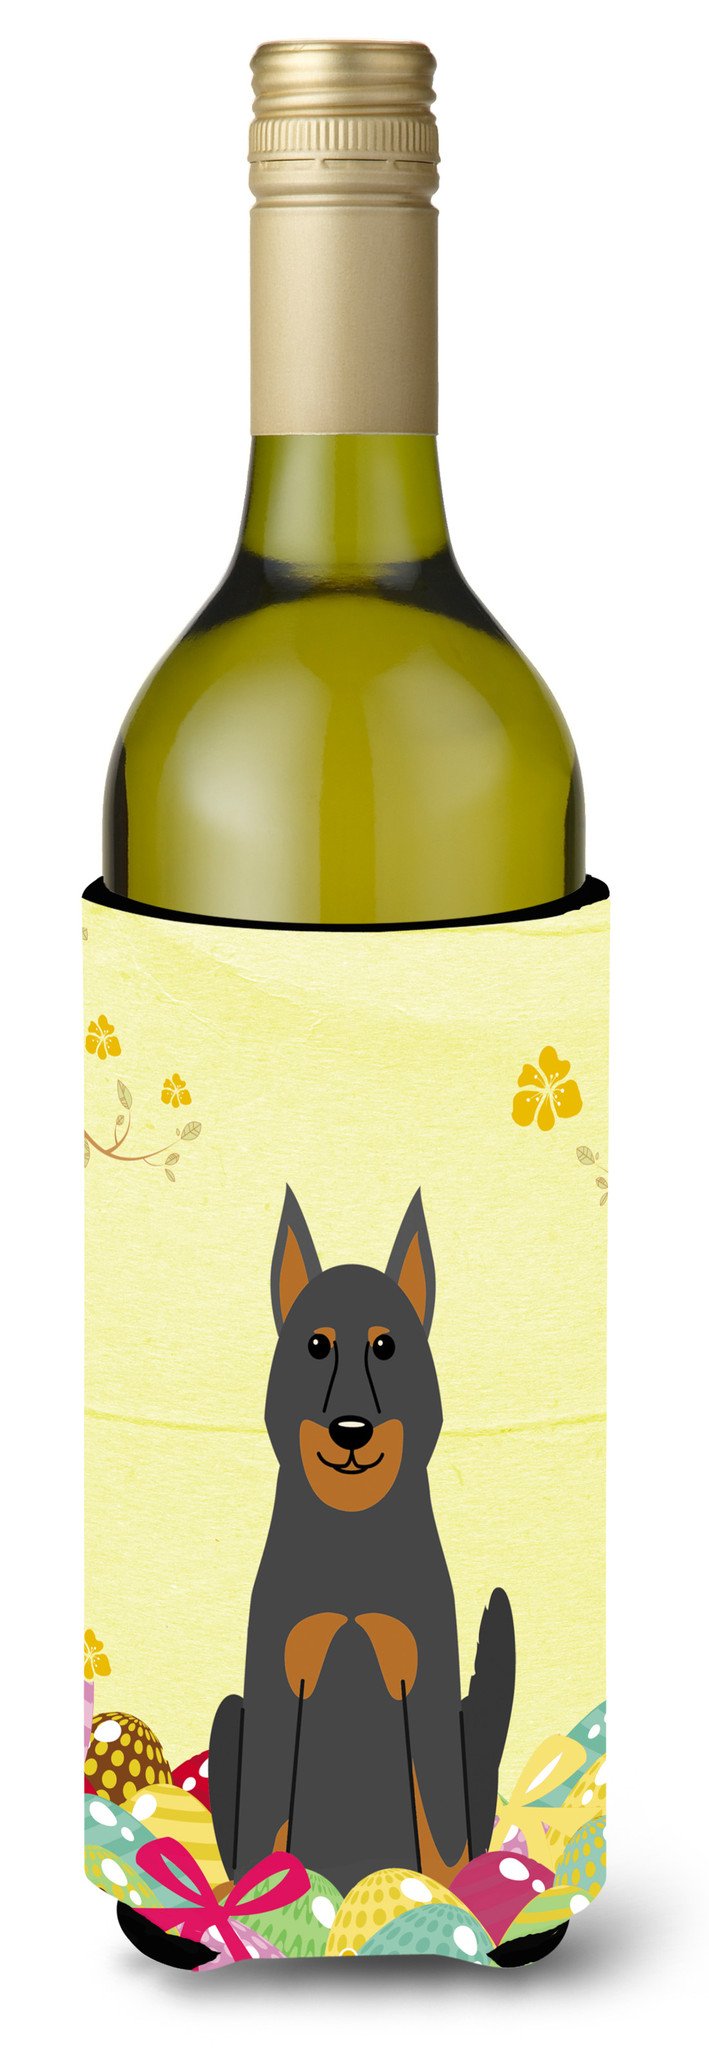 Easter Eggs Beauce Shepherd Dog Wine Bottle Beverge Insulator Hugger BB6080LITERK by Caroline's Treasures